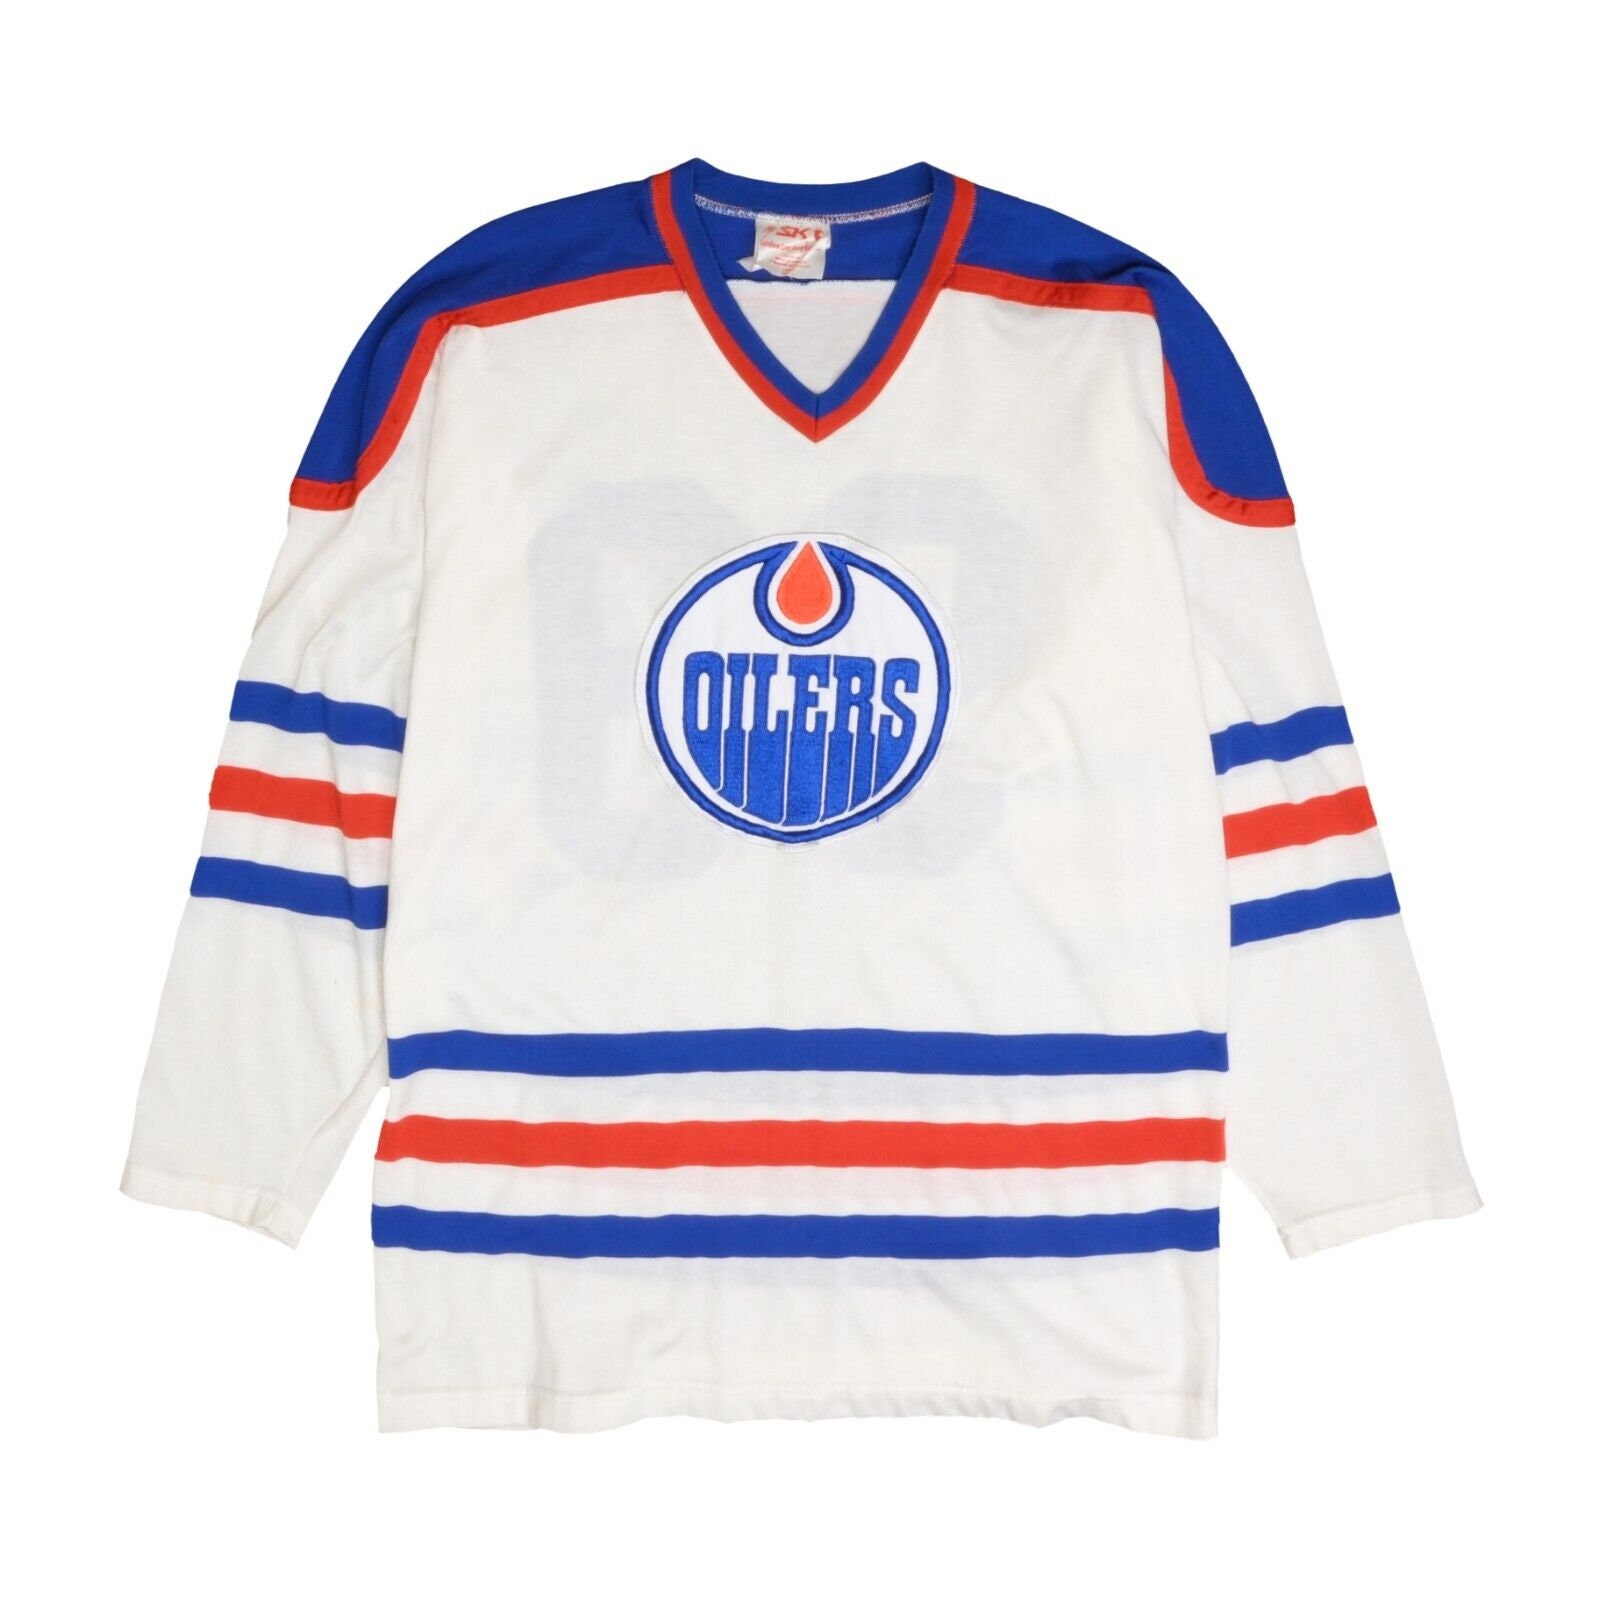 Vintage 1990s Edmonton Oilers NHL Hockey Jersey / Sportswear